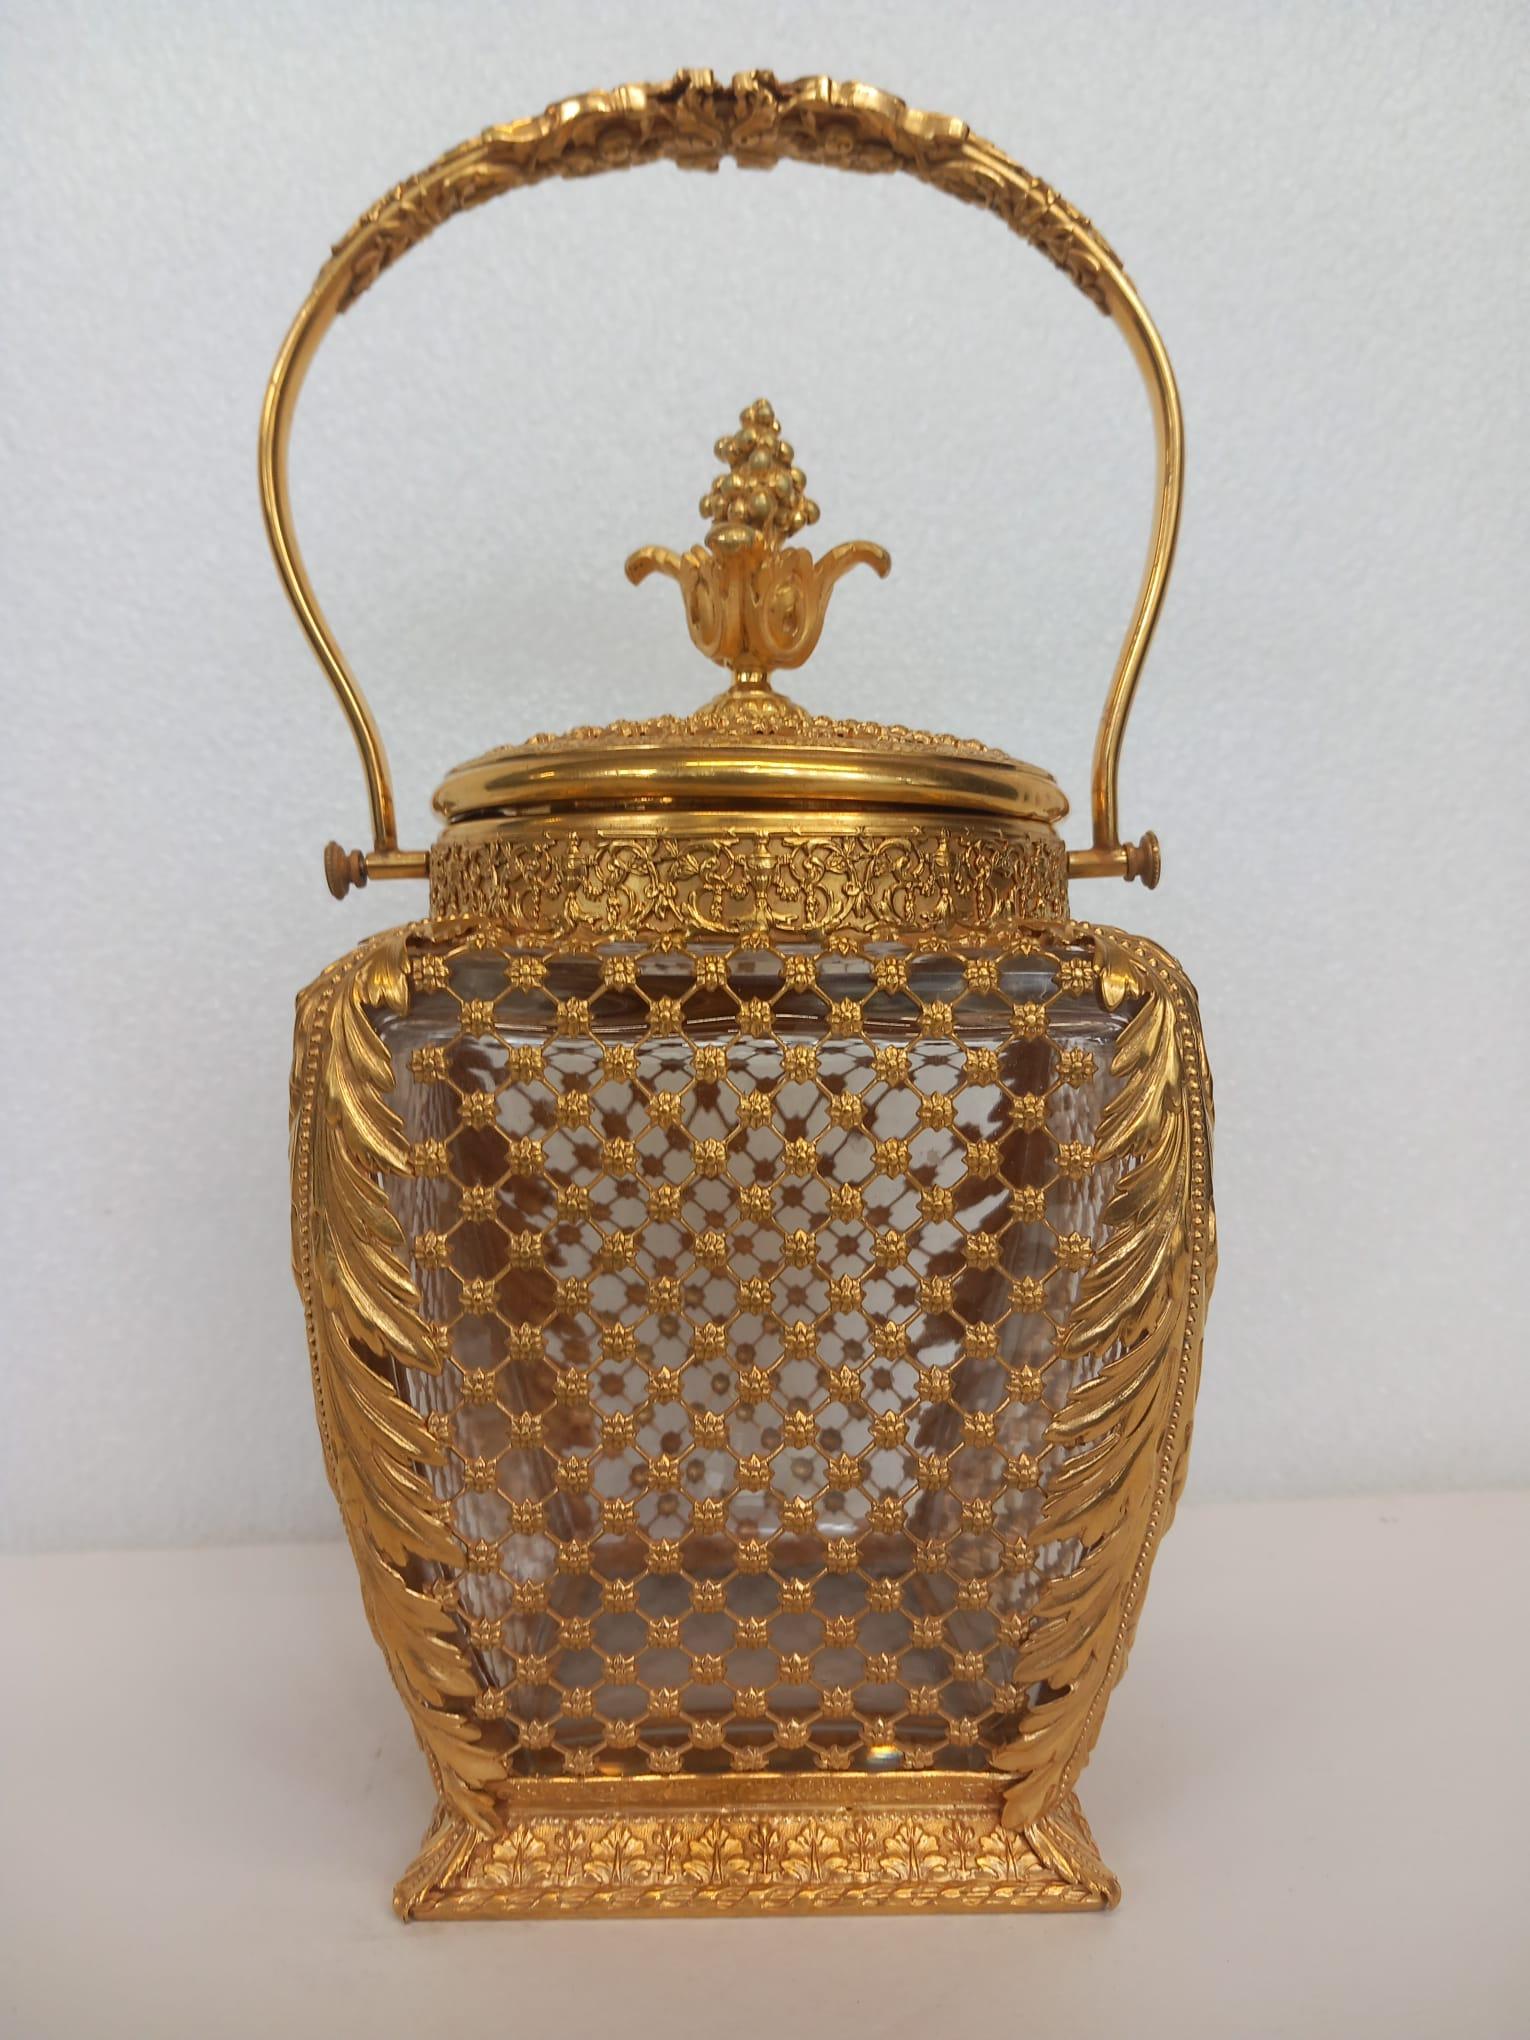 Ancienne boîte à biscuits ou seau à glace en bronze doré et verre, le corps en bronze doré décoré d'un motif de style rococo de fleurs et de feuilles d'acanthe sur les côtés, avec un couvercle et une poignée en bronze doré.
France vers 1880